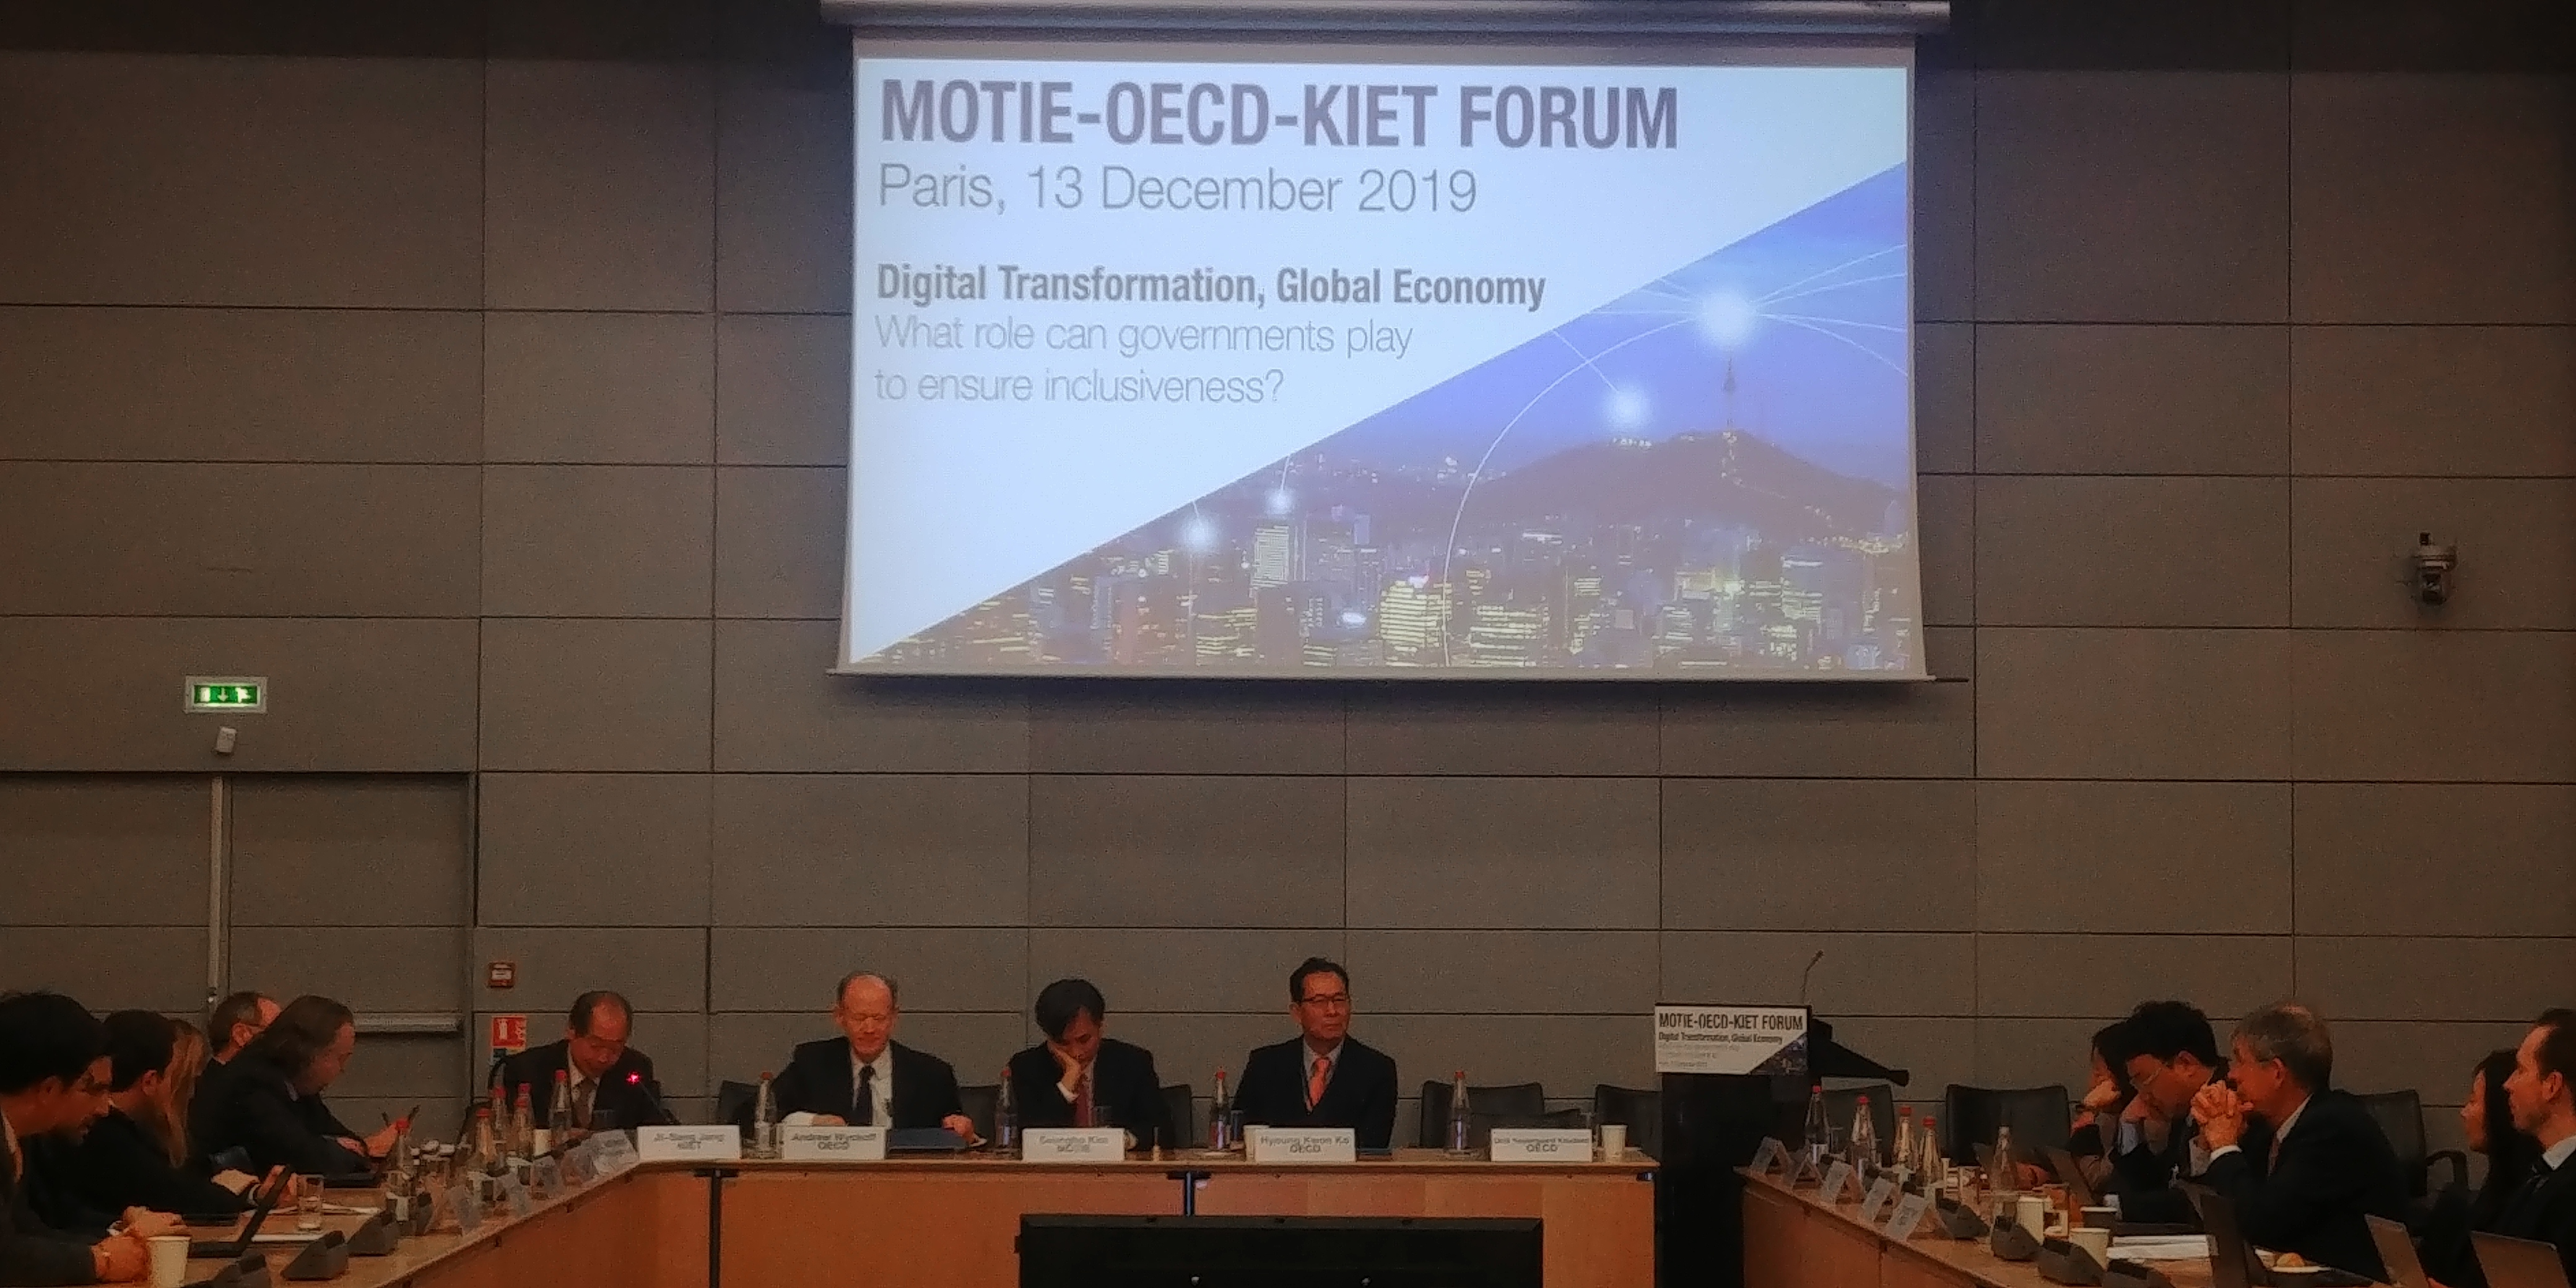 MOTIE-OECD-KIET Joint Int